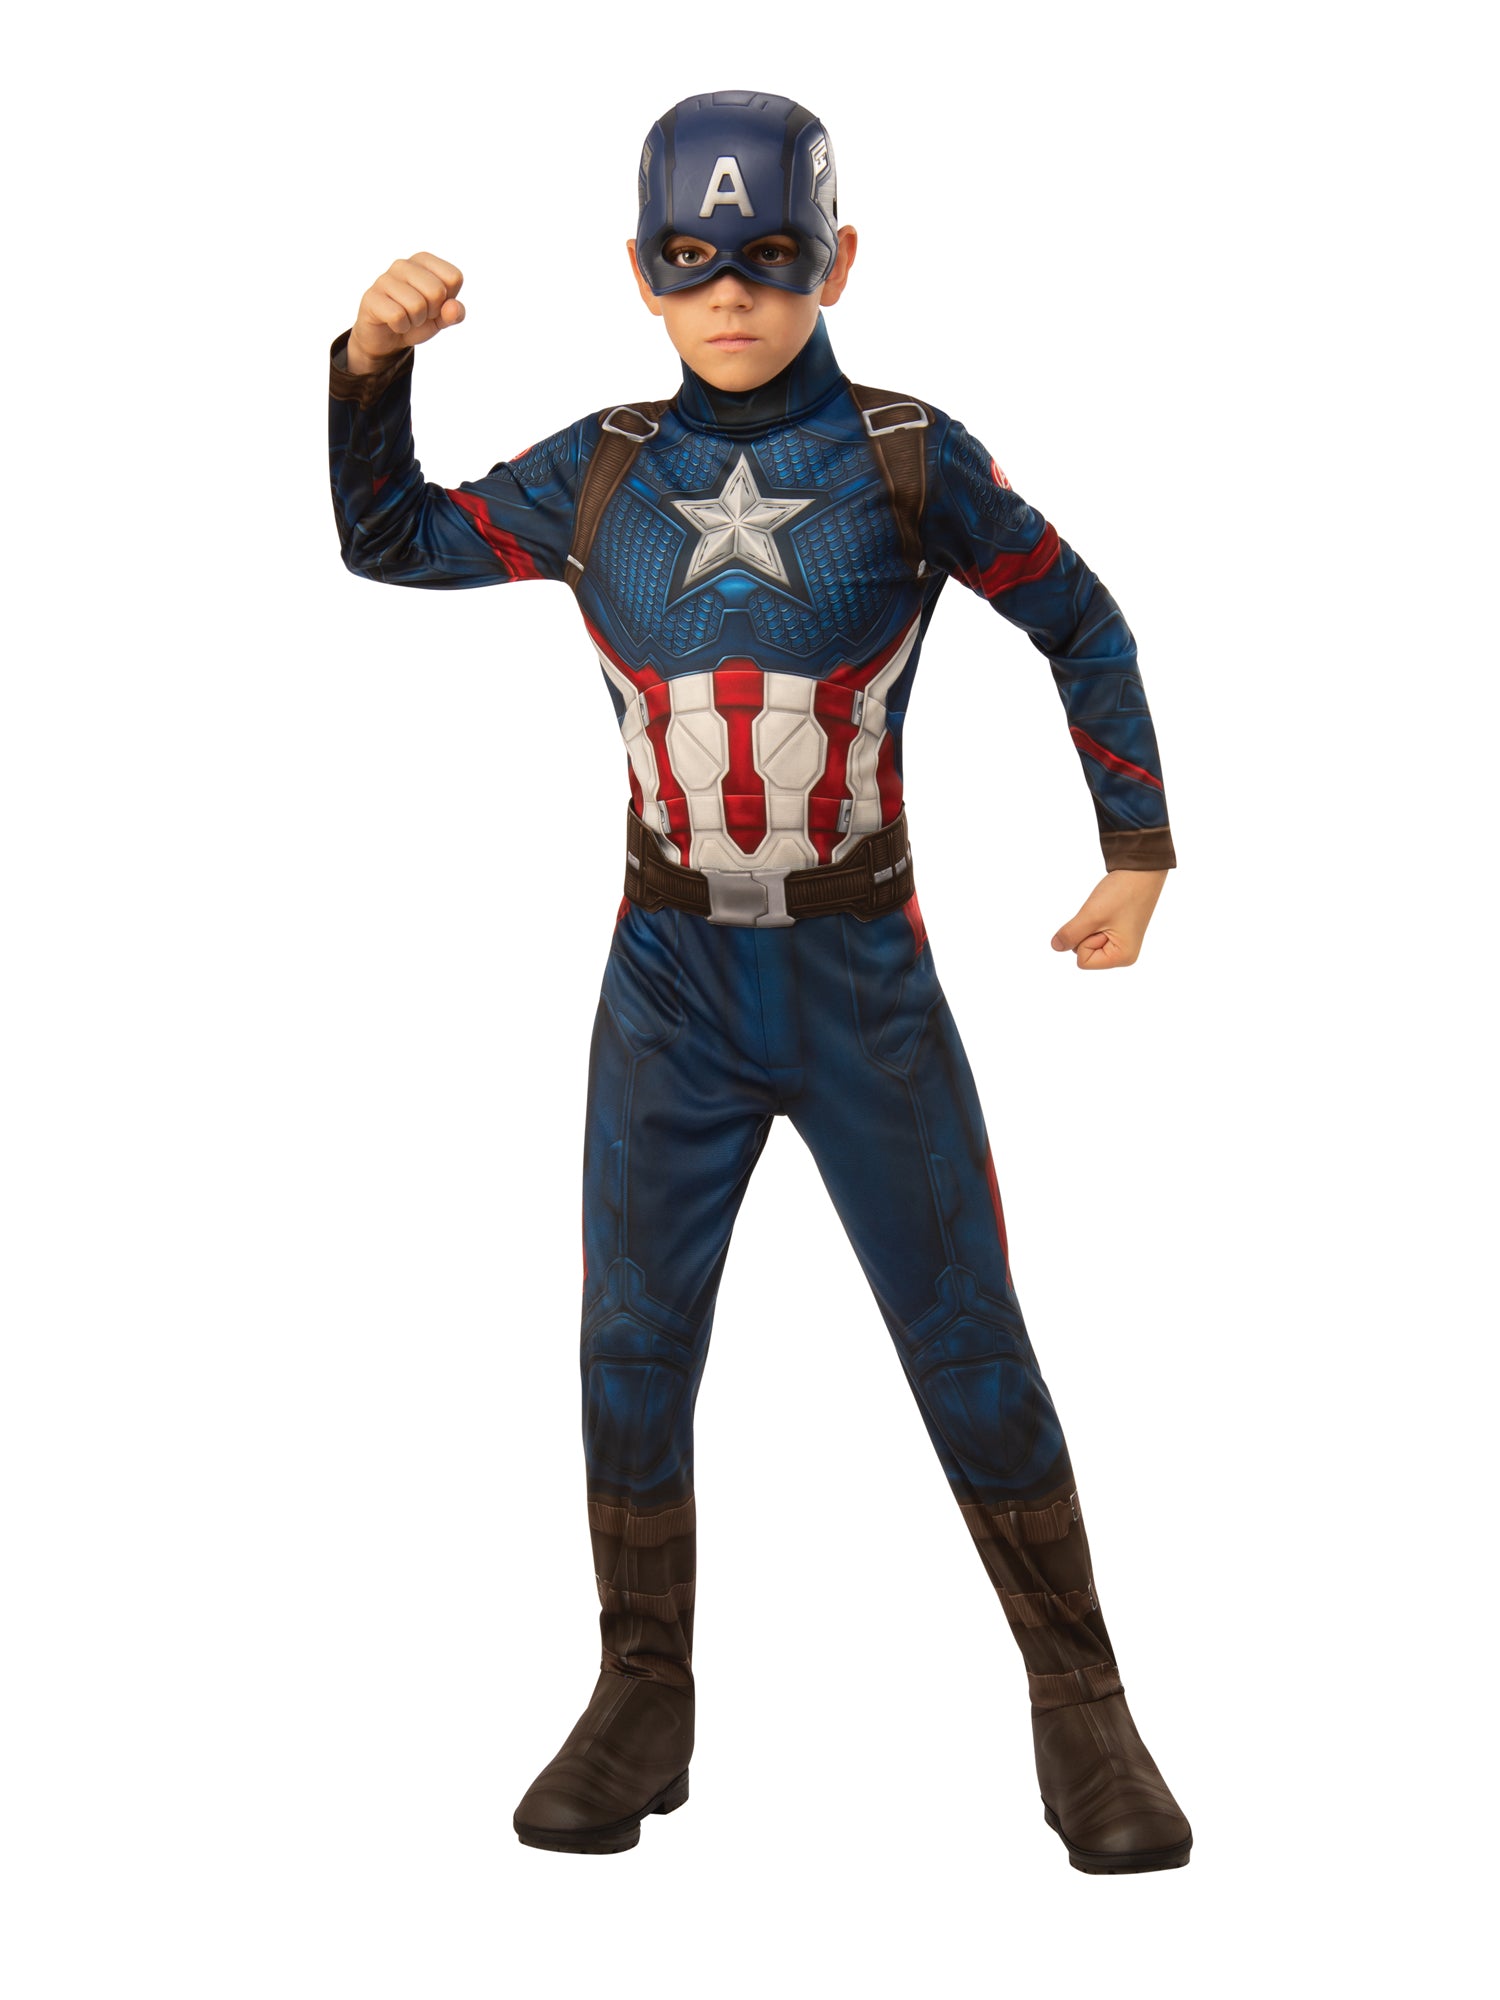 Captain America, Endgame, Avengers, Endgame, Multi, Marvel, Kids Costumes, Medium, Front